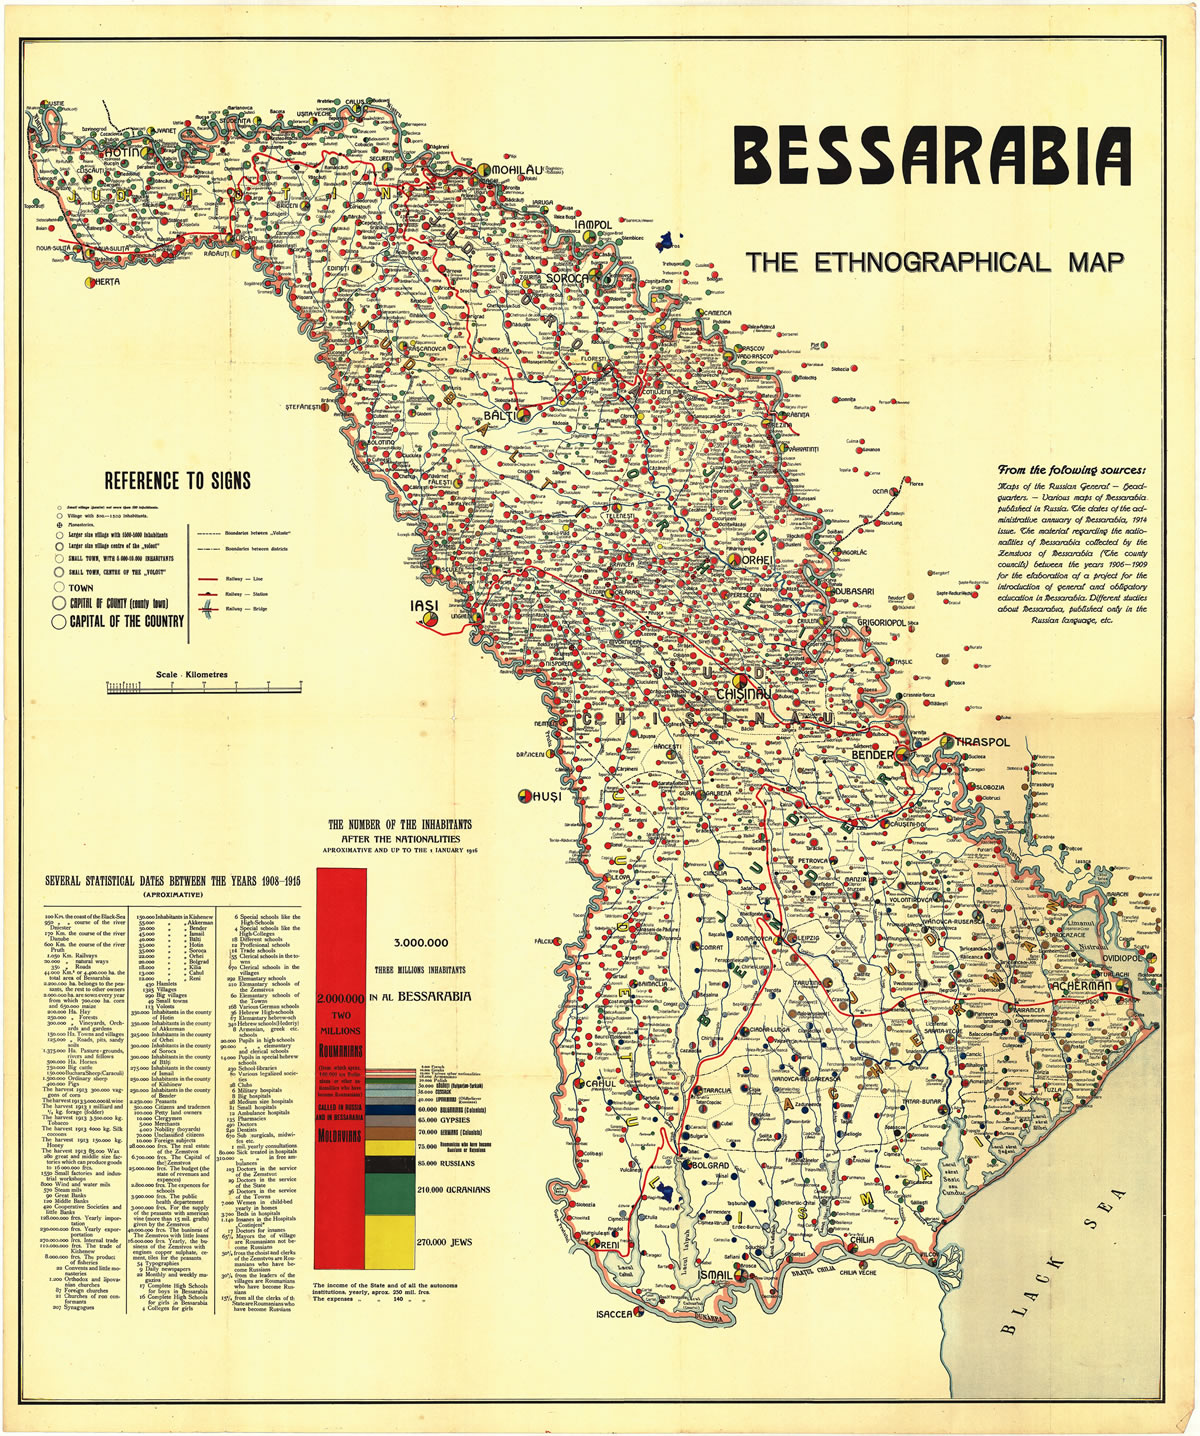 Basarabia - ethnographic map. 1916 (MNIR)